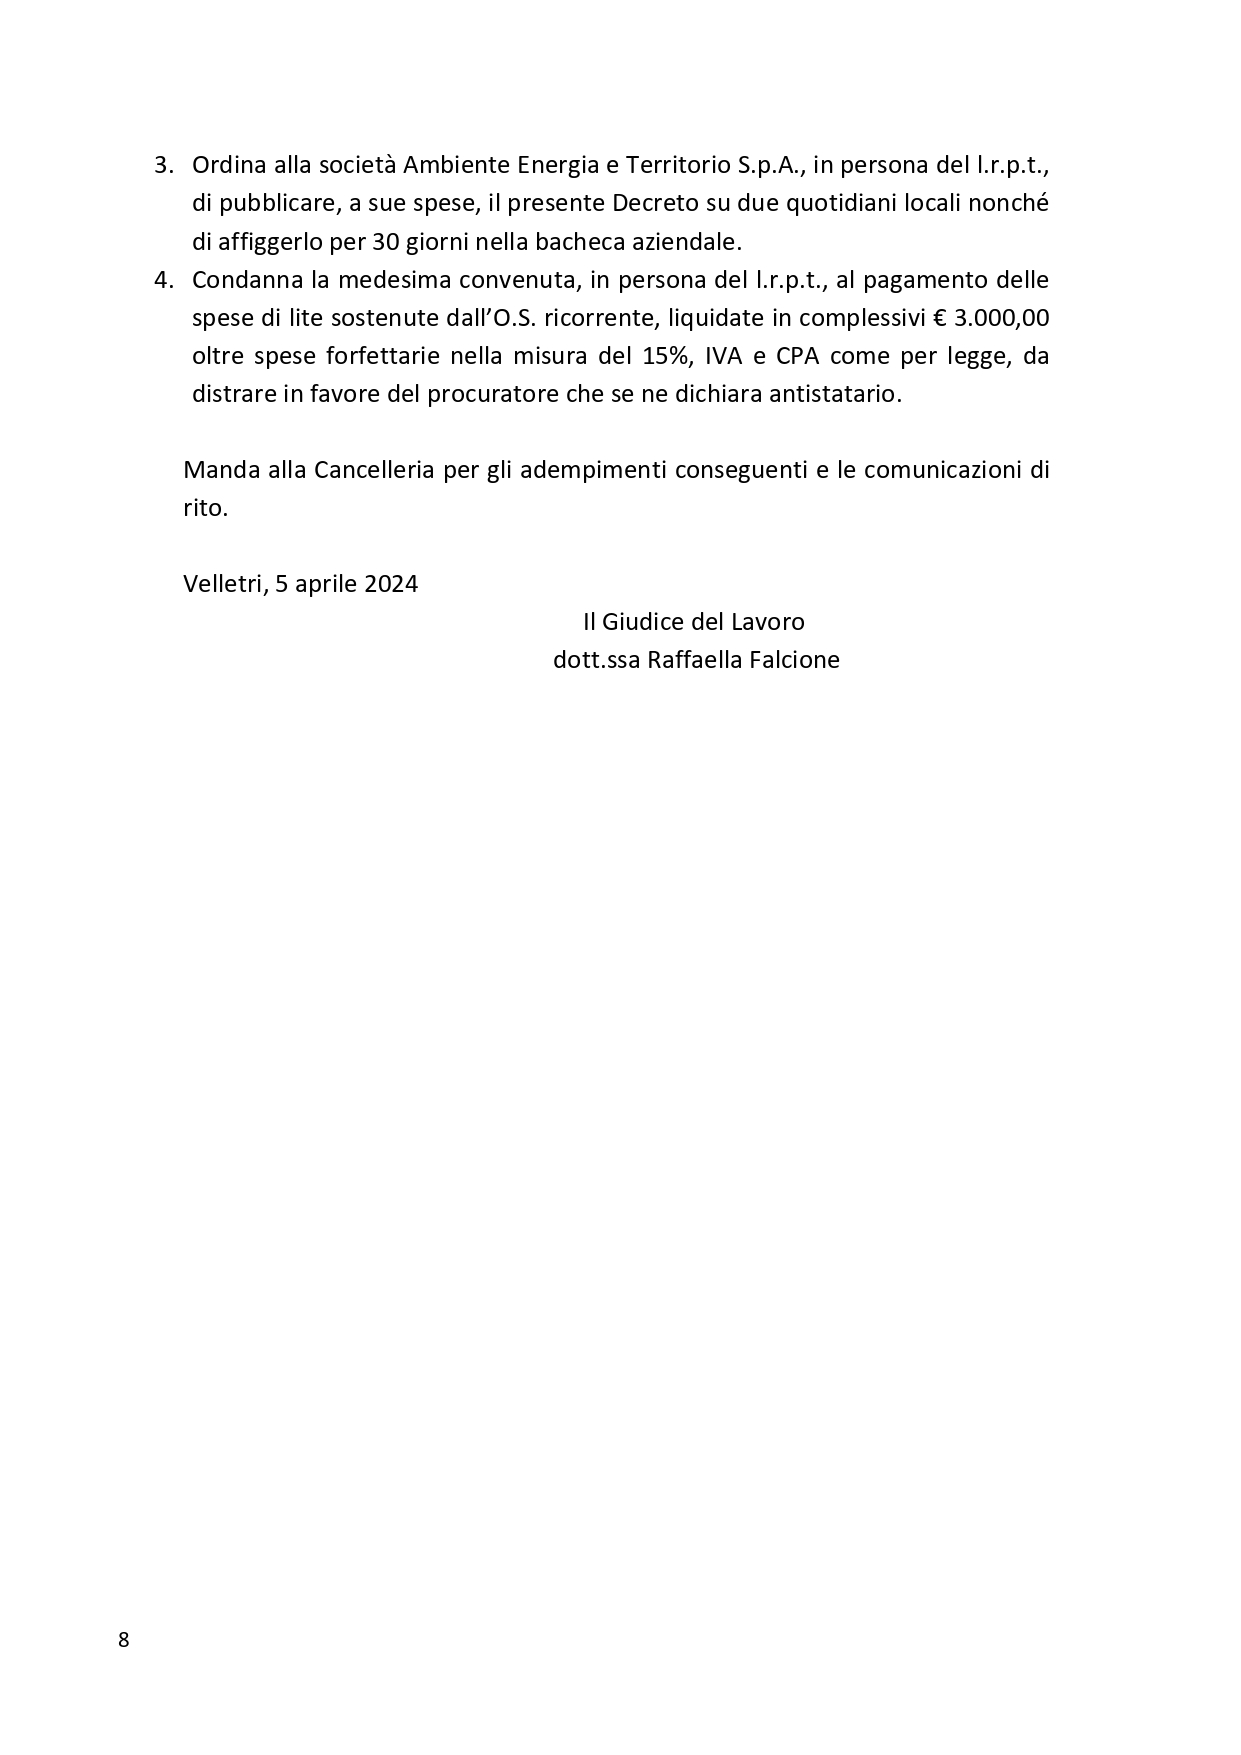 Decreto UGL Ambiente 1 page 0008